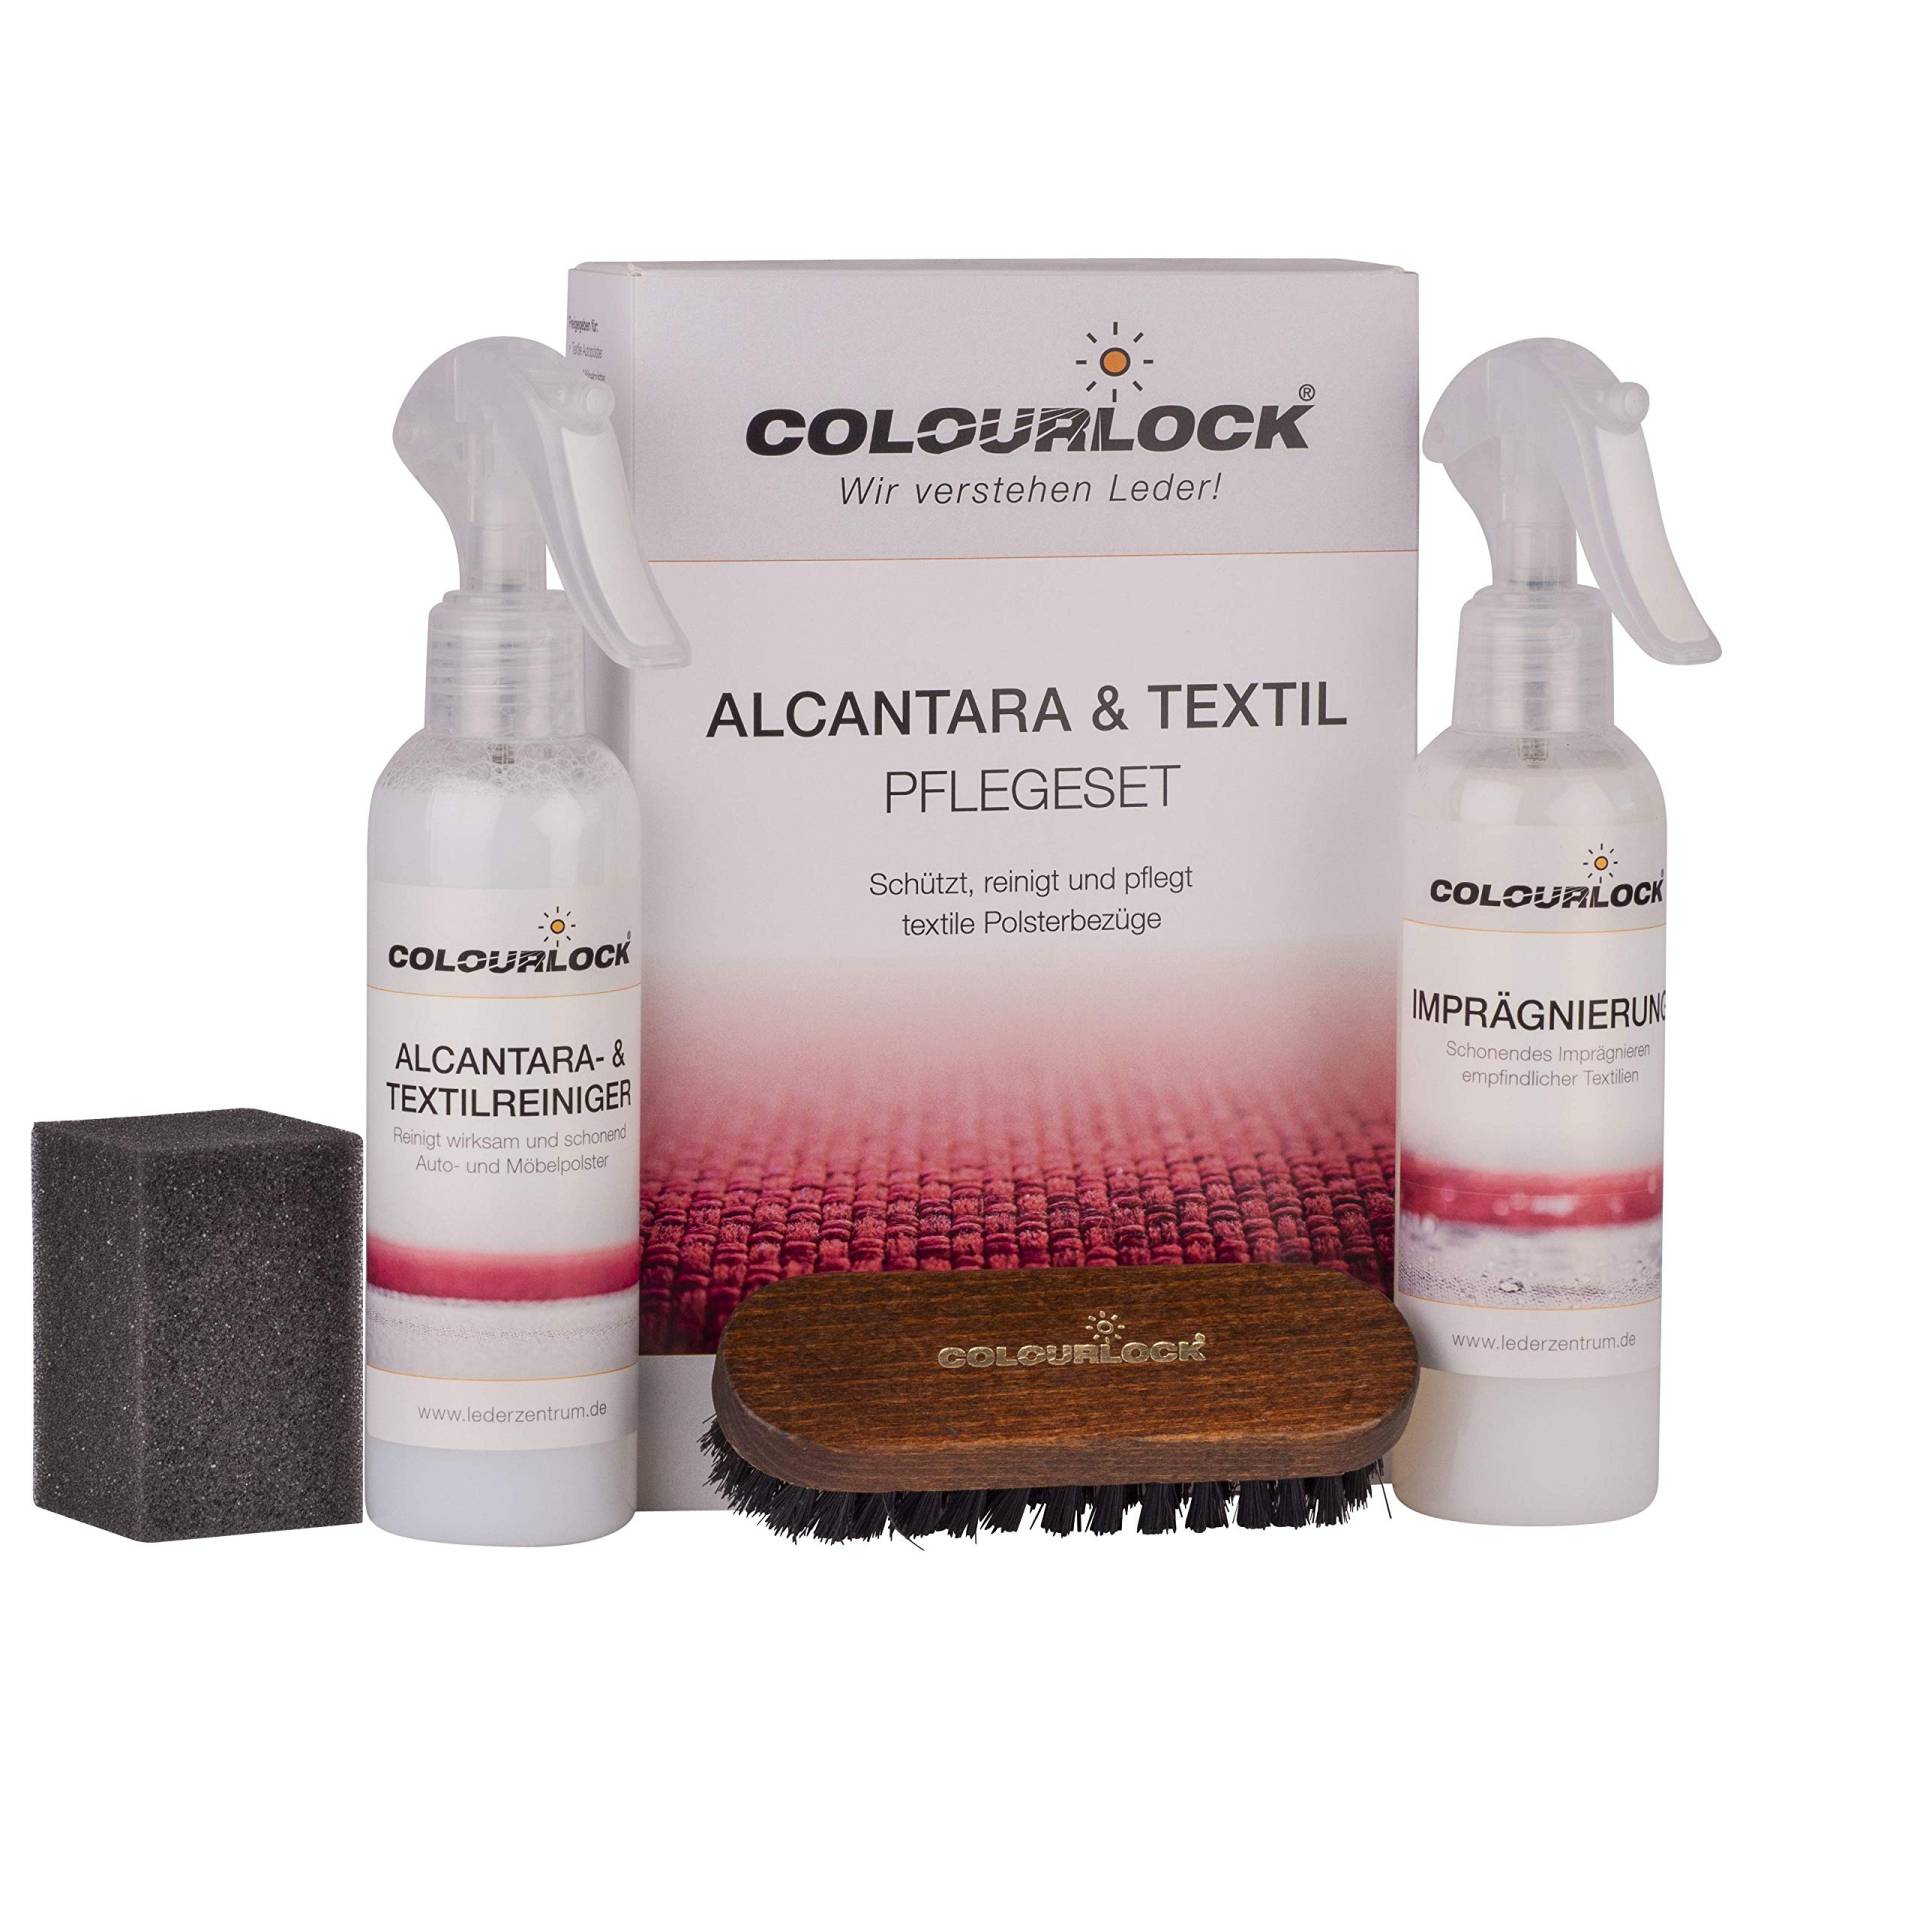 COLOURLOCK Alcantara & Textil Pflegeset, reinigt und imprägniert schonend Alcantara, Microfaser und Naturfaser von COLOURLOCK